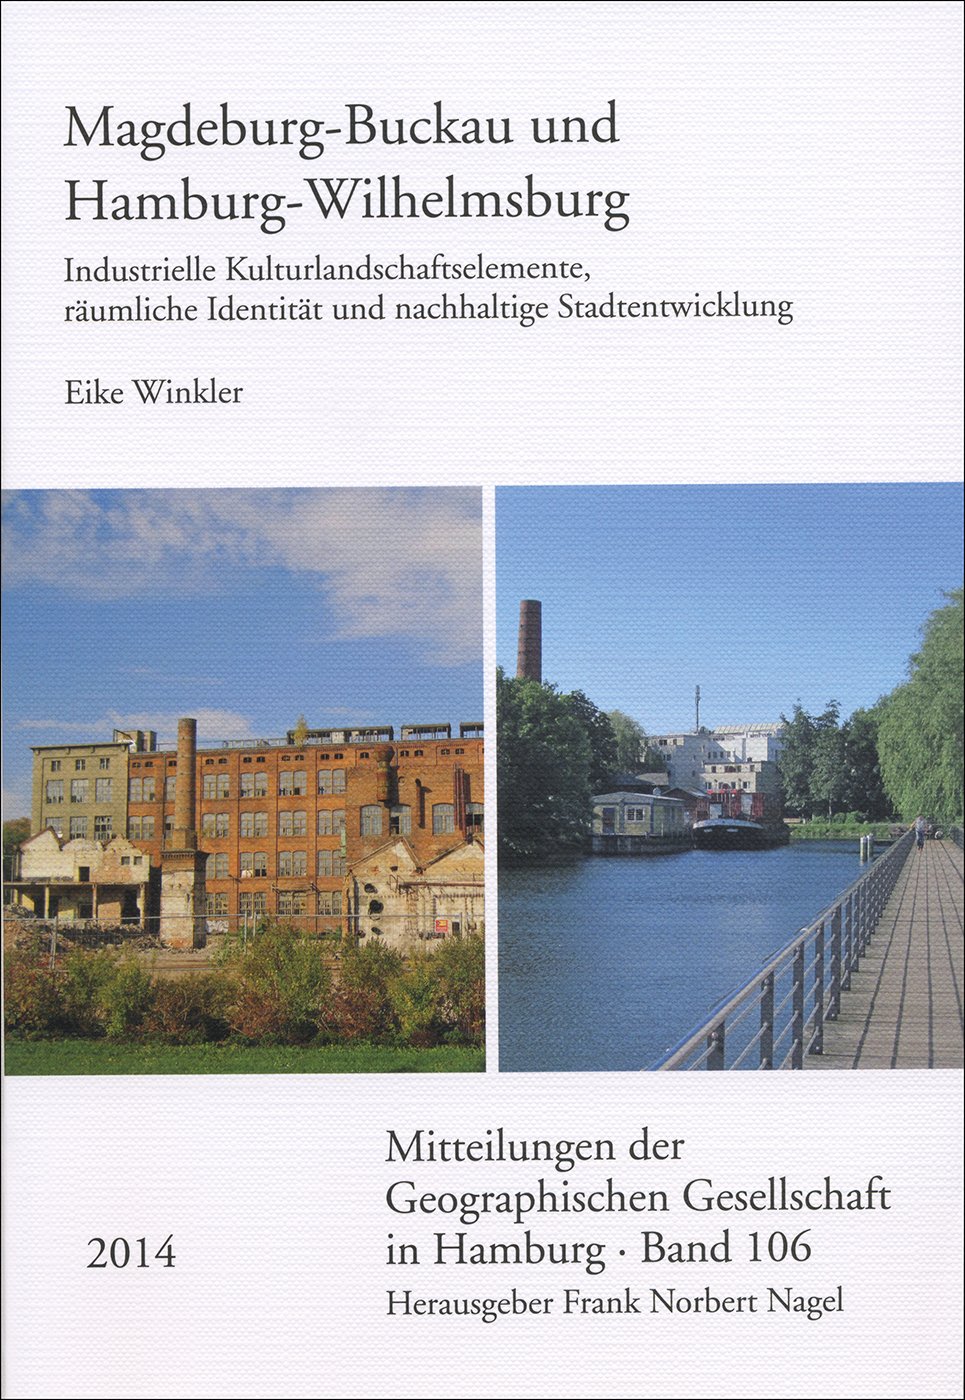 Magdeburg-Buckau und Hamburg-Wilhelmsburg